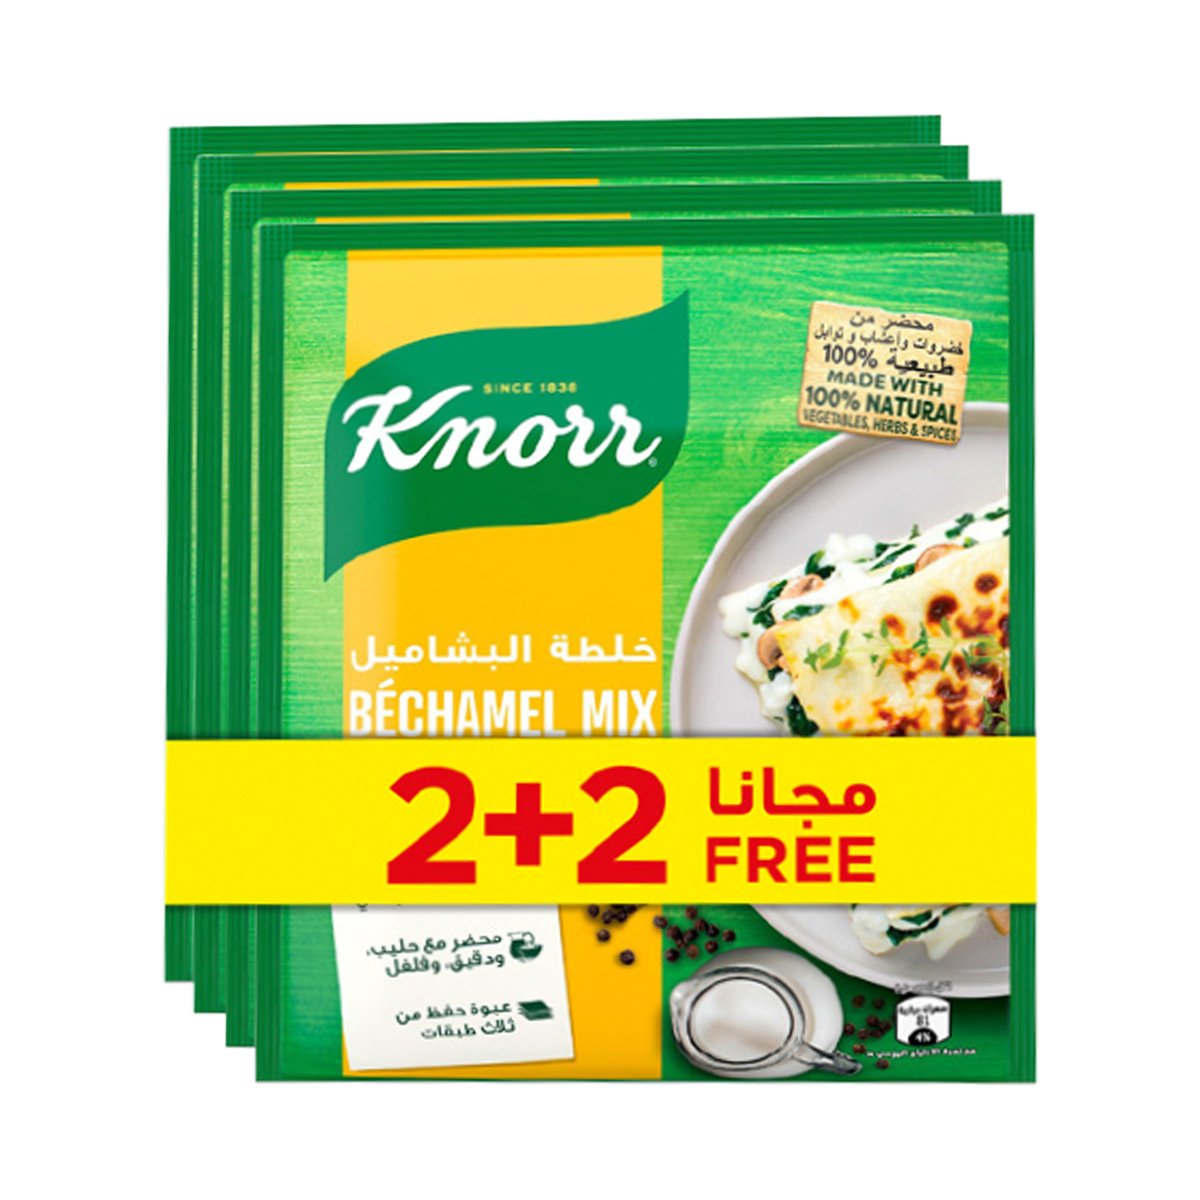 Buy Knorr Bechamel Mix 75 g 2+2 Online at Best Price | Ramadan Saving | Lulu UAE in UAE